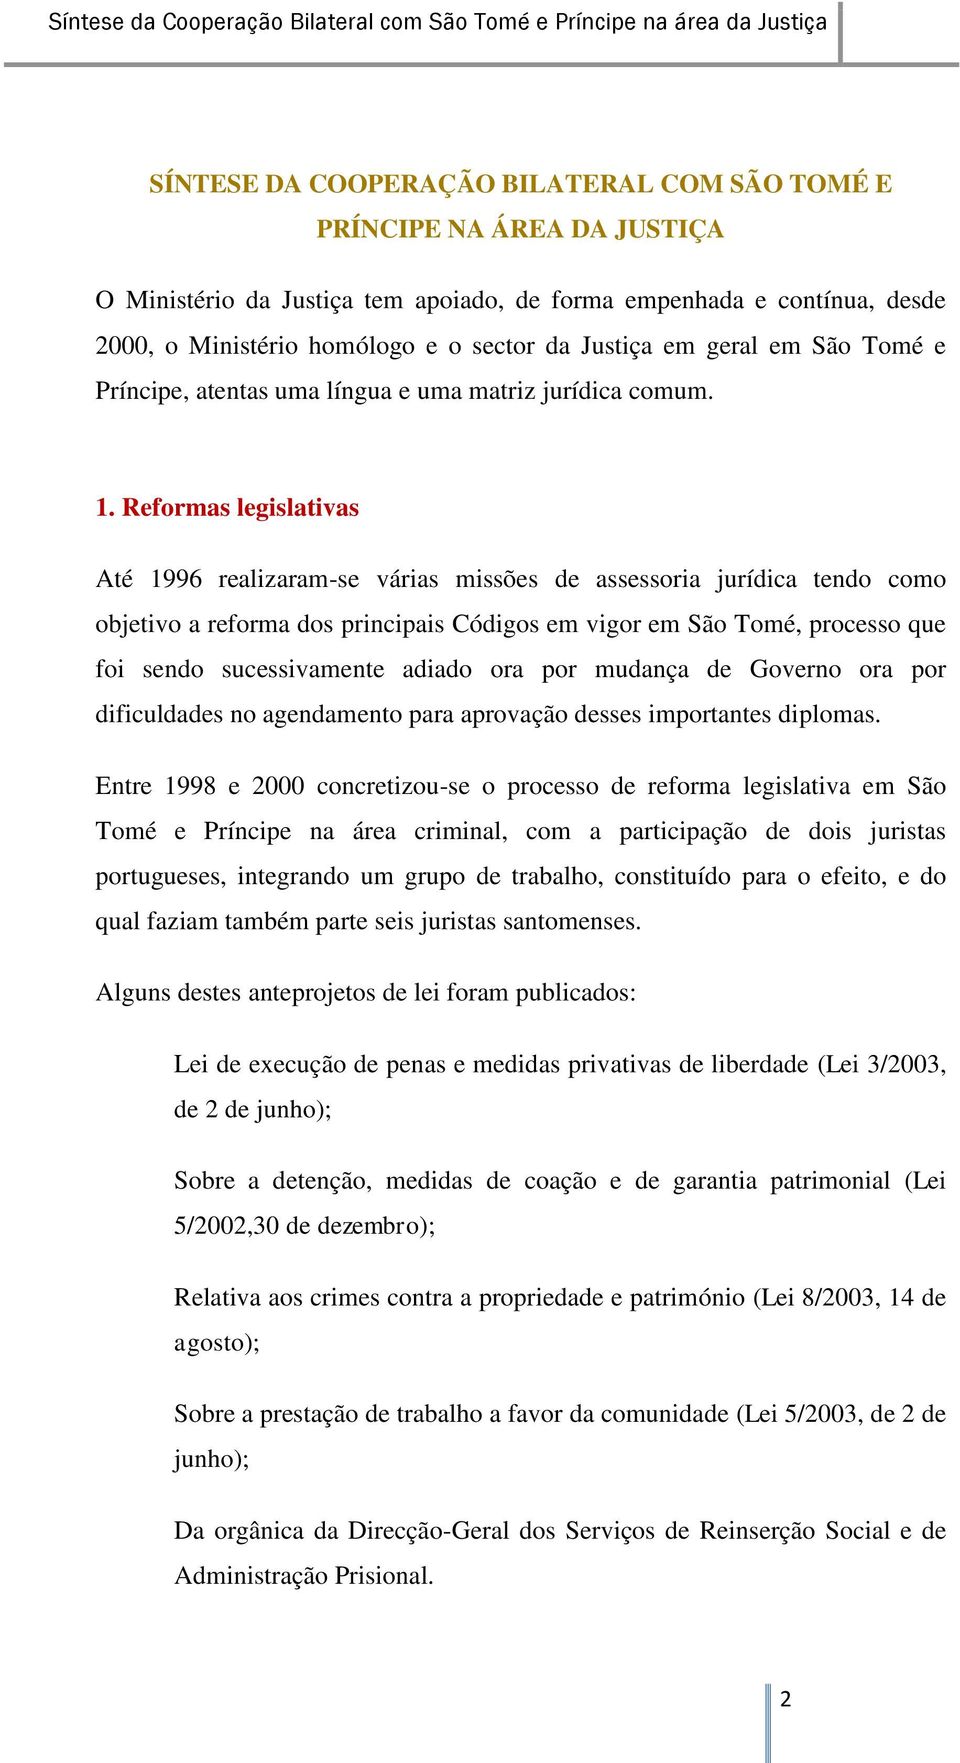 Reformas legislativas Até 1996 realizaram-se várias missões de assessoria jurídica tendo como objetivo a reforma dos principais Códigos em vigor em São Tomé, processo que foi sendo sucessivamente